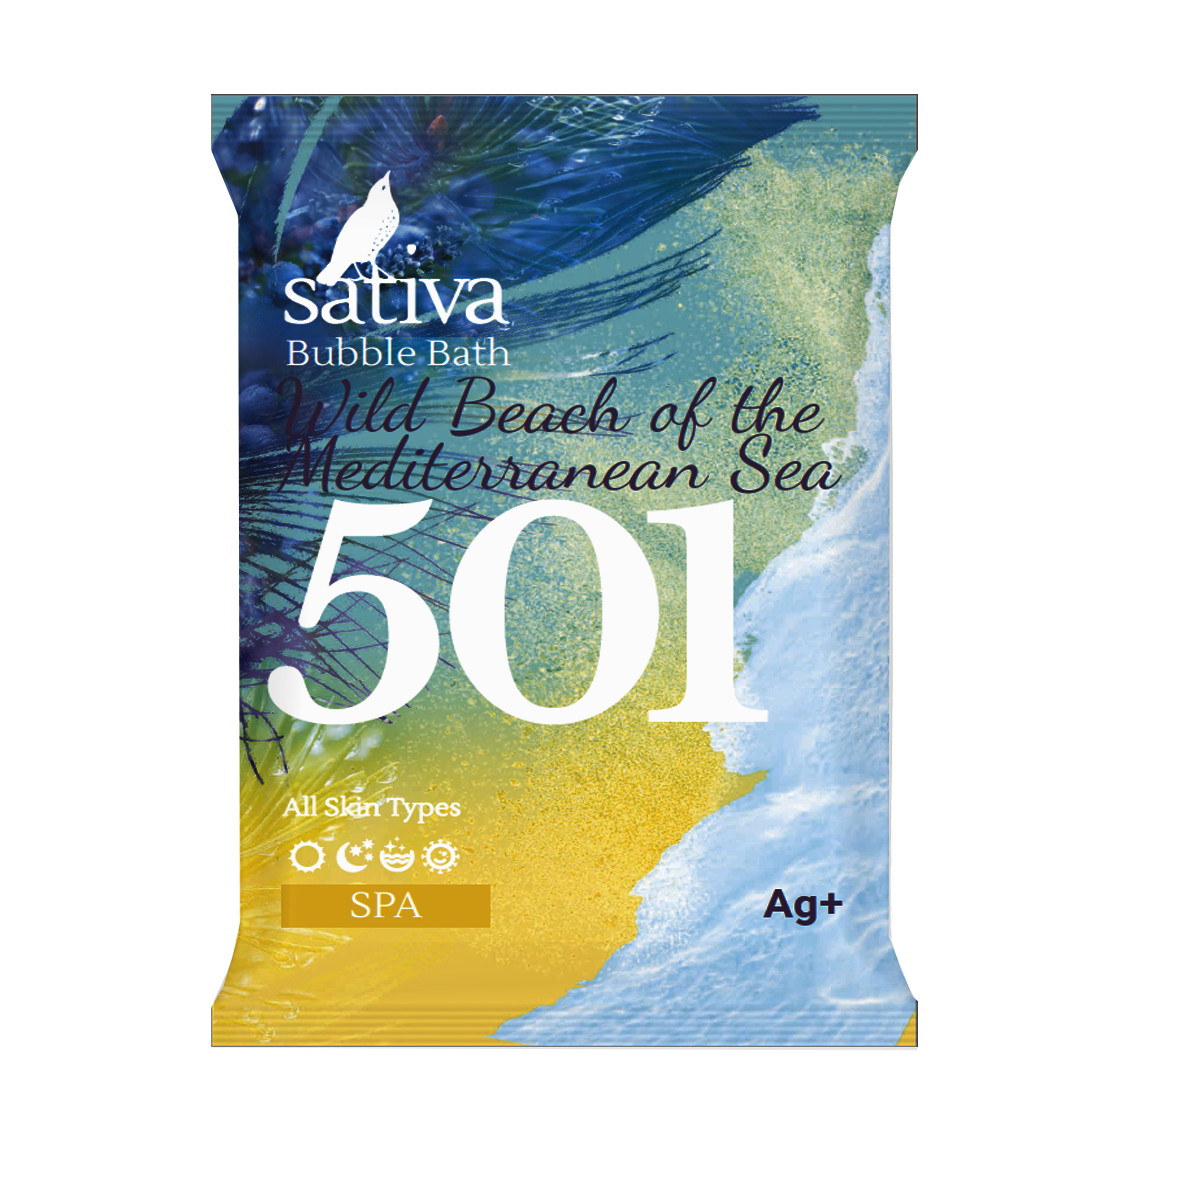 Пена для ванны «Дикий пляж Средиземного моря» №501, 15 гр. (Sativa)